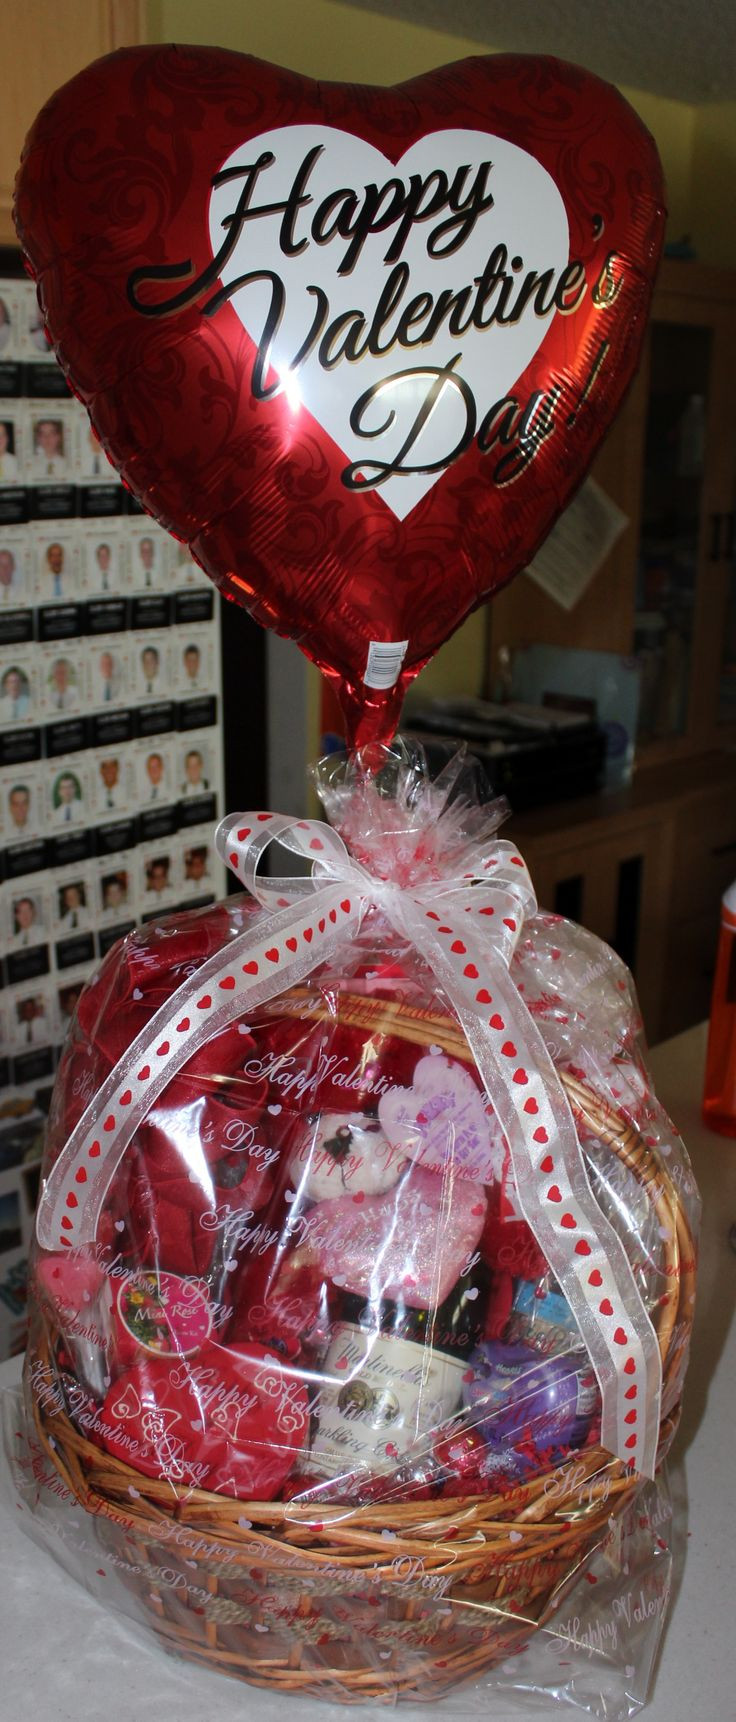 Homemade Valentine Gift Basket Ideas
 Best 25 Valentine t baskets ideas on Pinterest